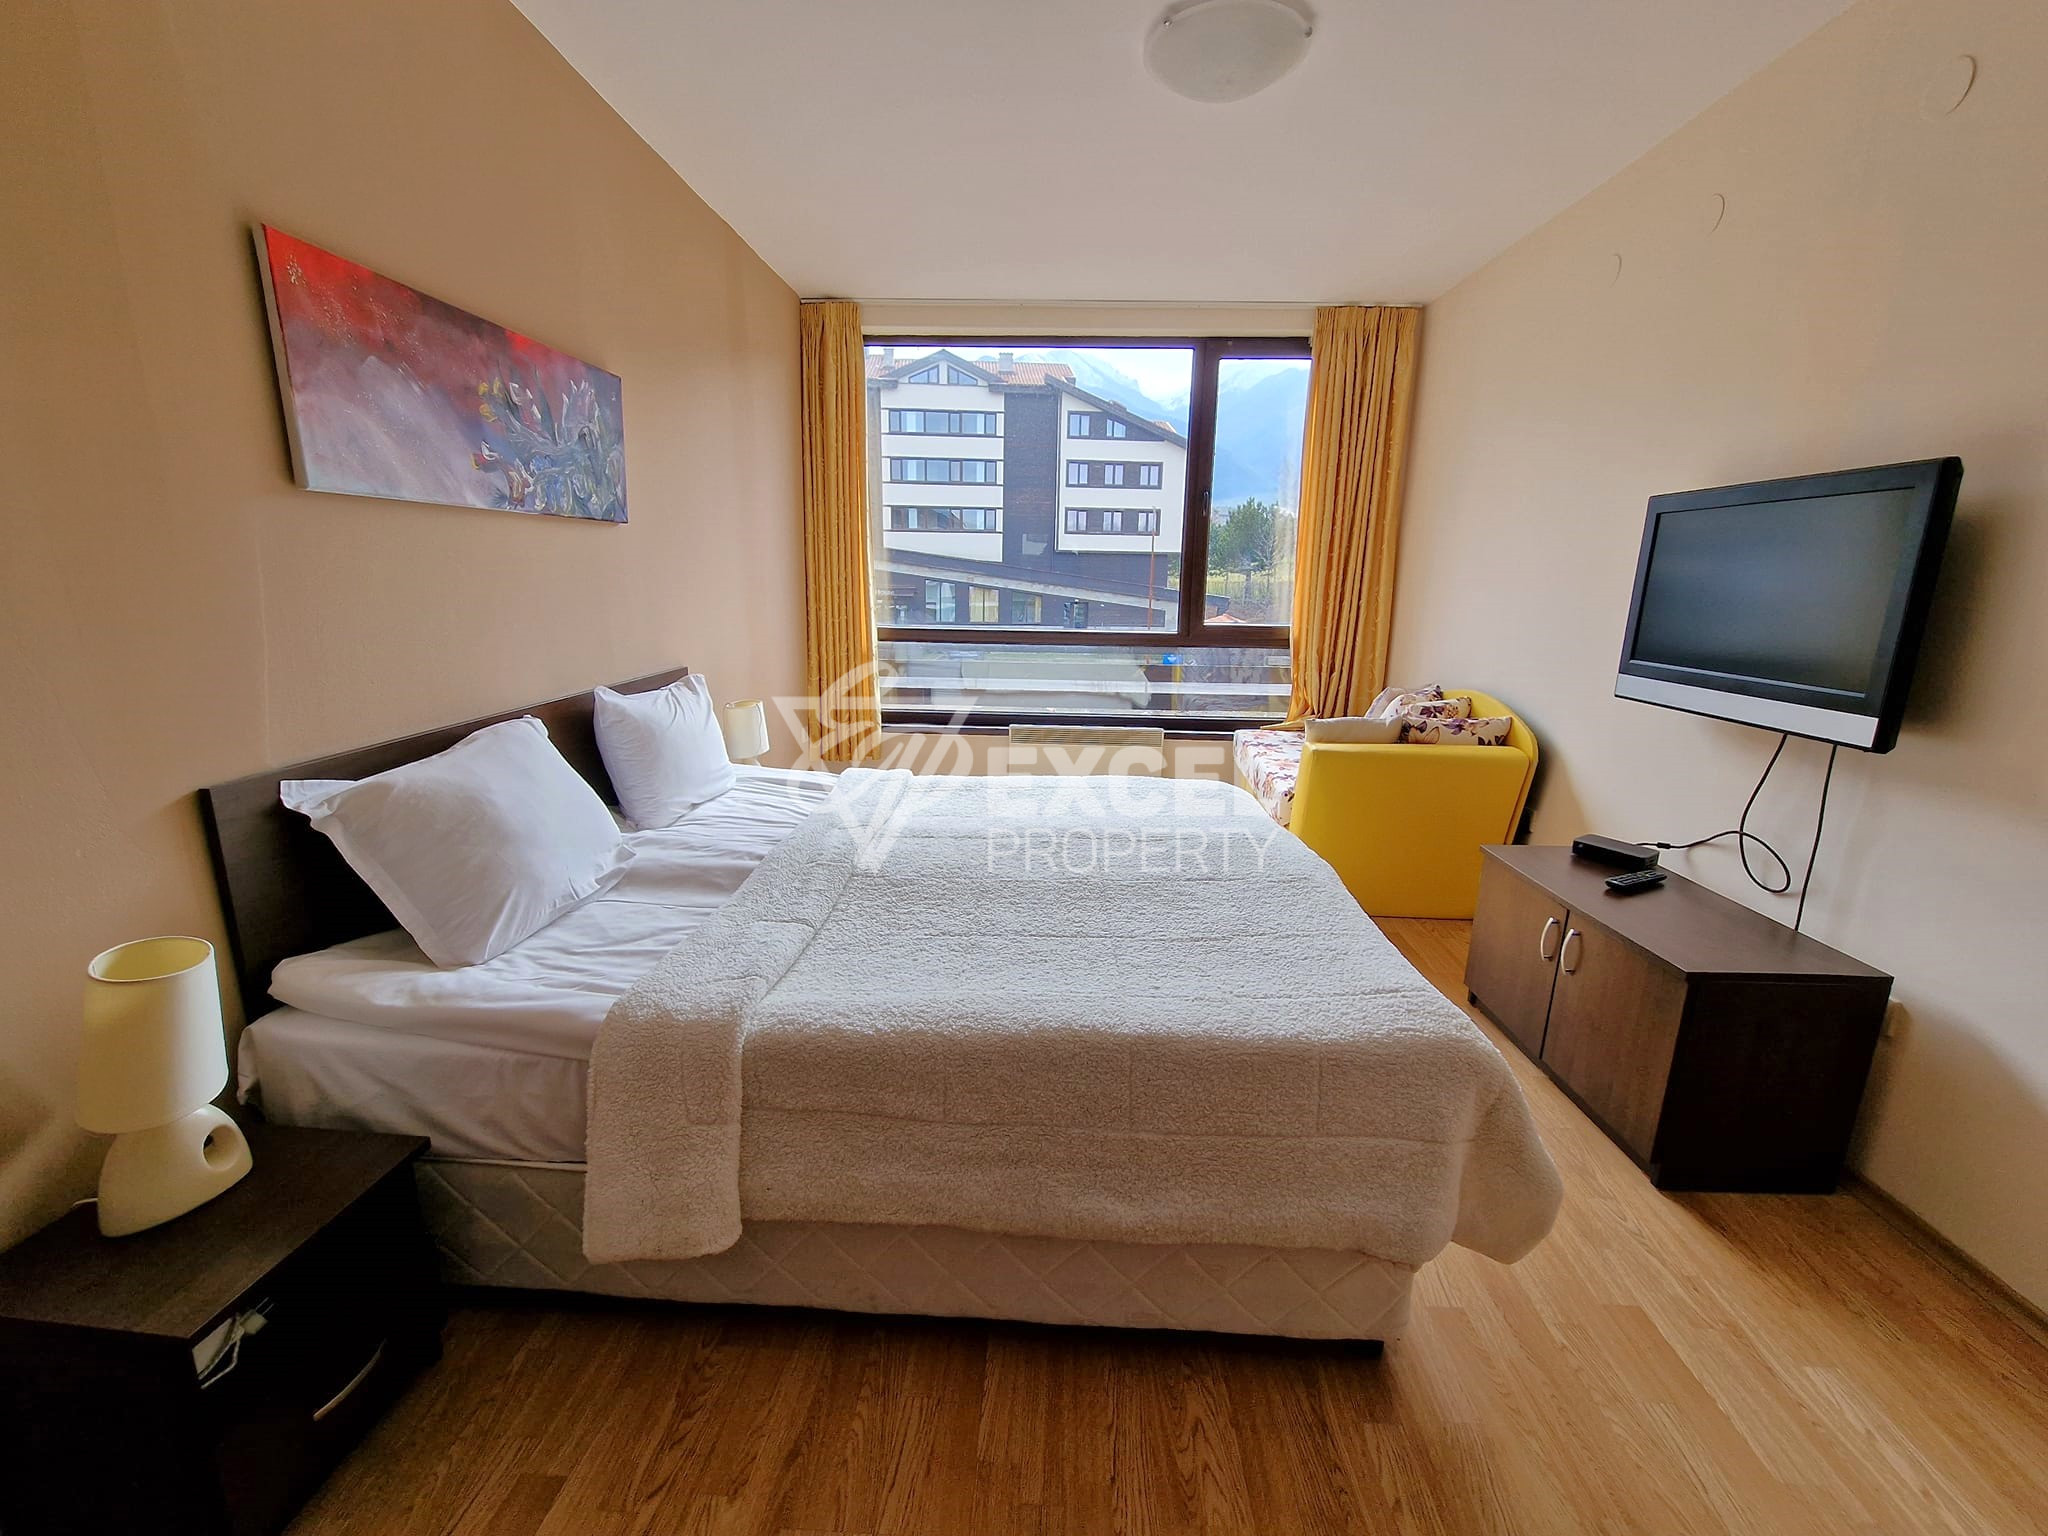 Двустаен апартамент с климатик за продажба в Aspen Resort, район Разлог! Изгодна цена!